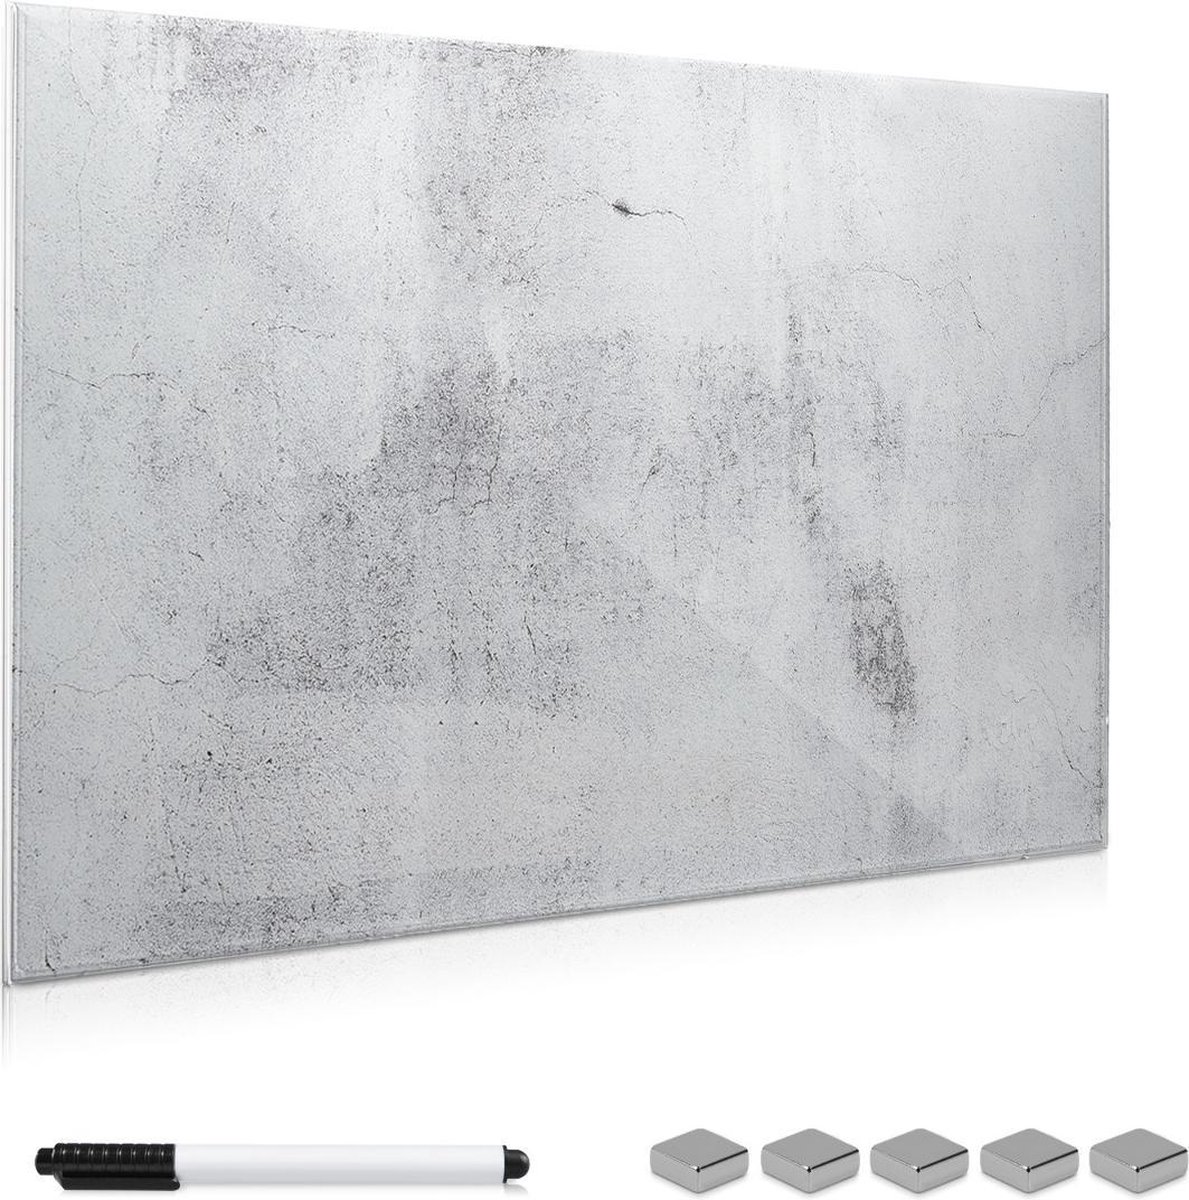 Navaris glassboard - Magnetisch bord voor aan de wand - Memobord van glas - 90 x 60 cm - Magneetbord inclusief magneten en marker - Betonlook - Navaris